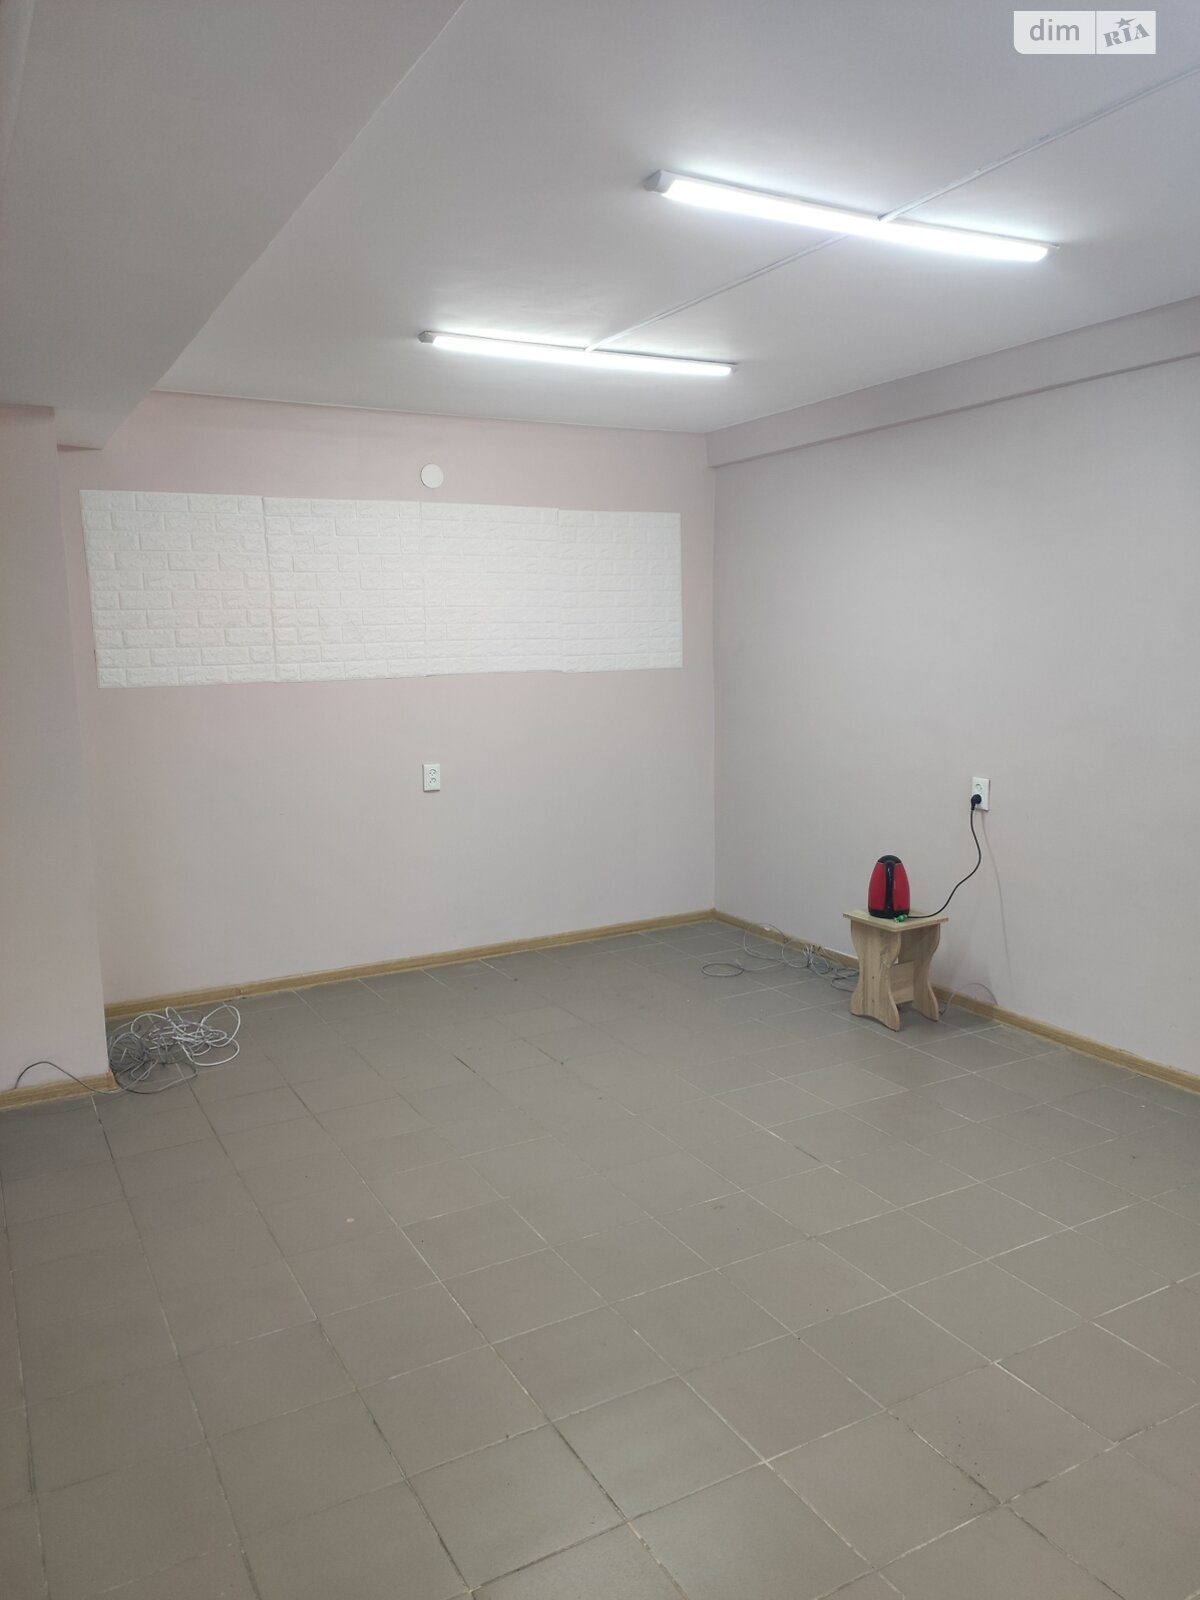 Аренда офисного помещения в Запорожье, Василия Сергиенко улица 66, помещений - 1, этаж - 1 фото 1